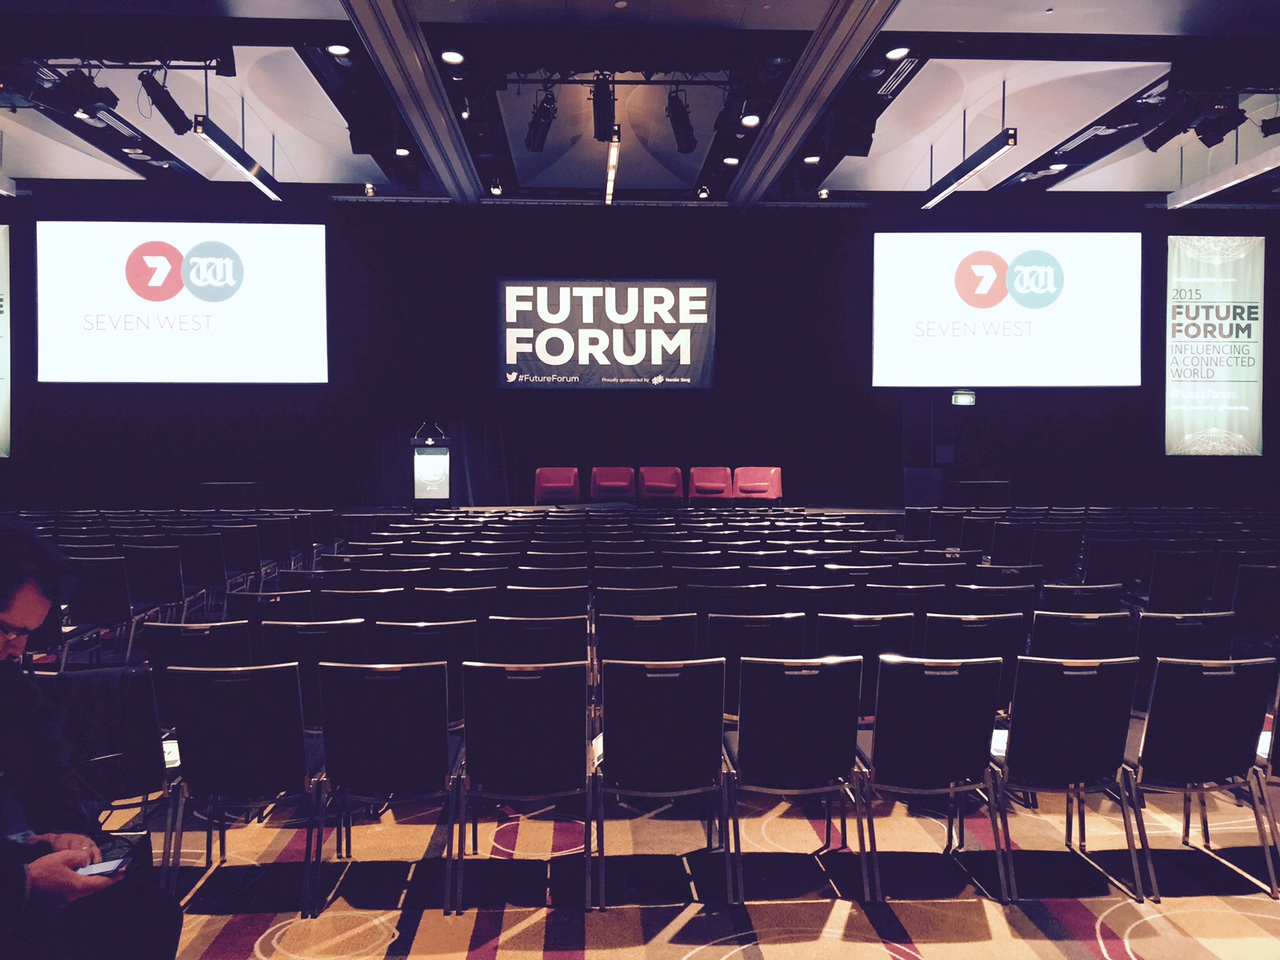 Australia Future Forum conference emphasizes mobile, audience García